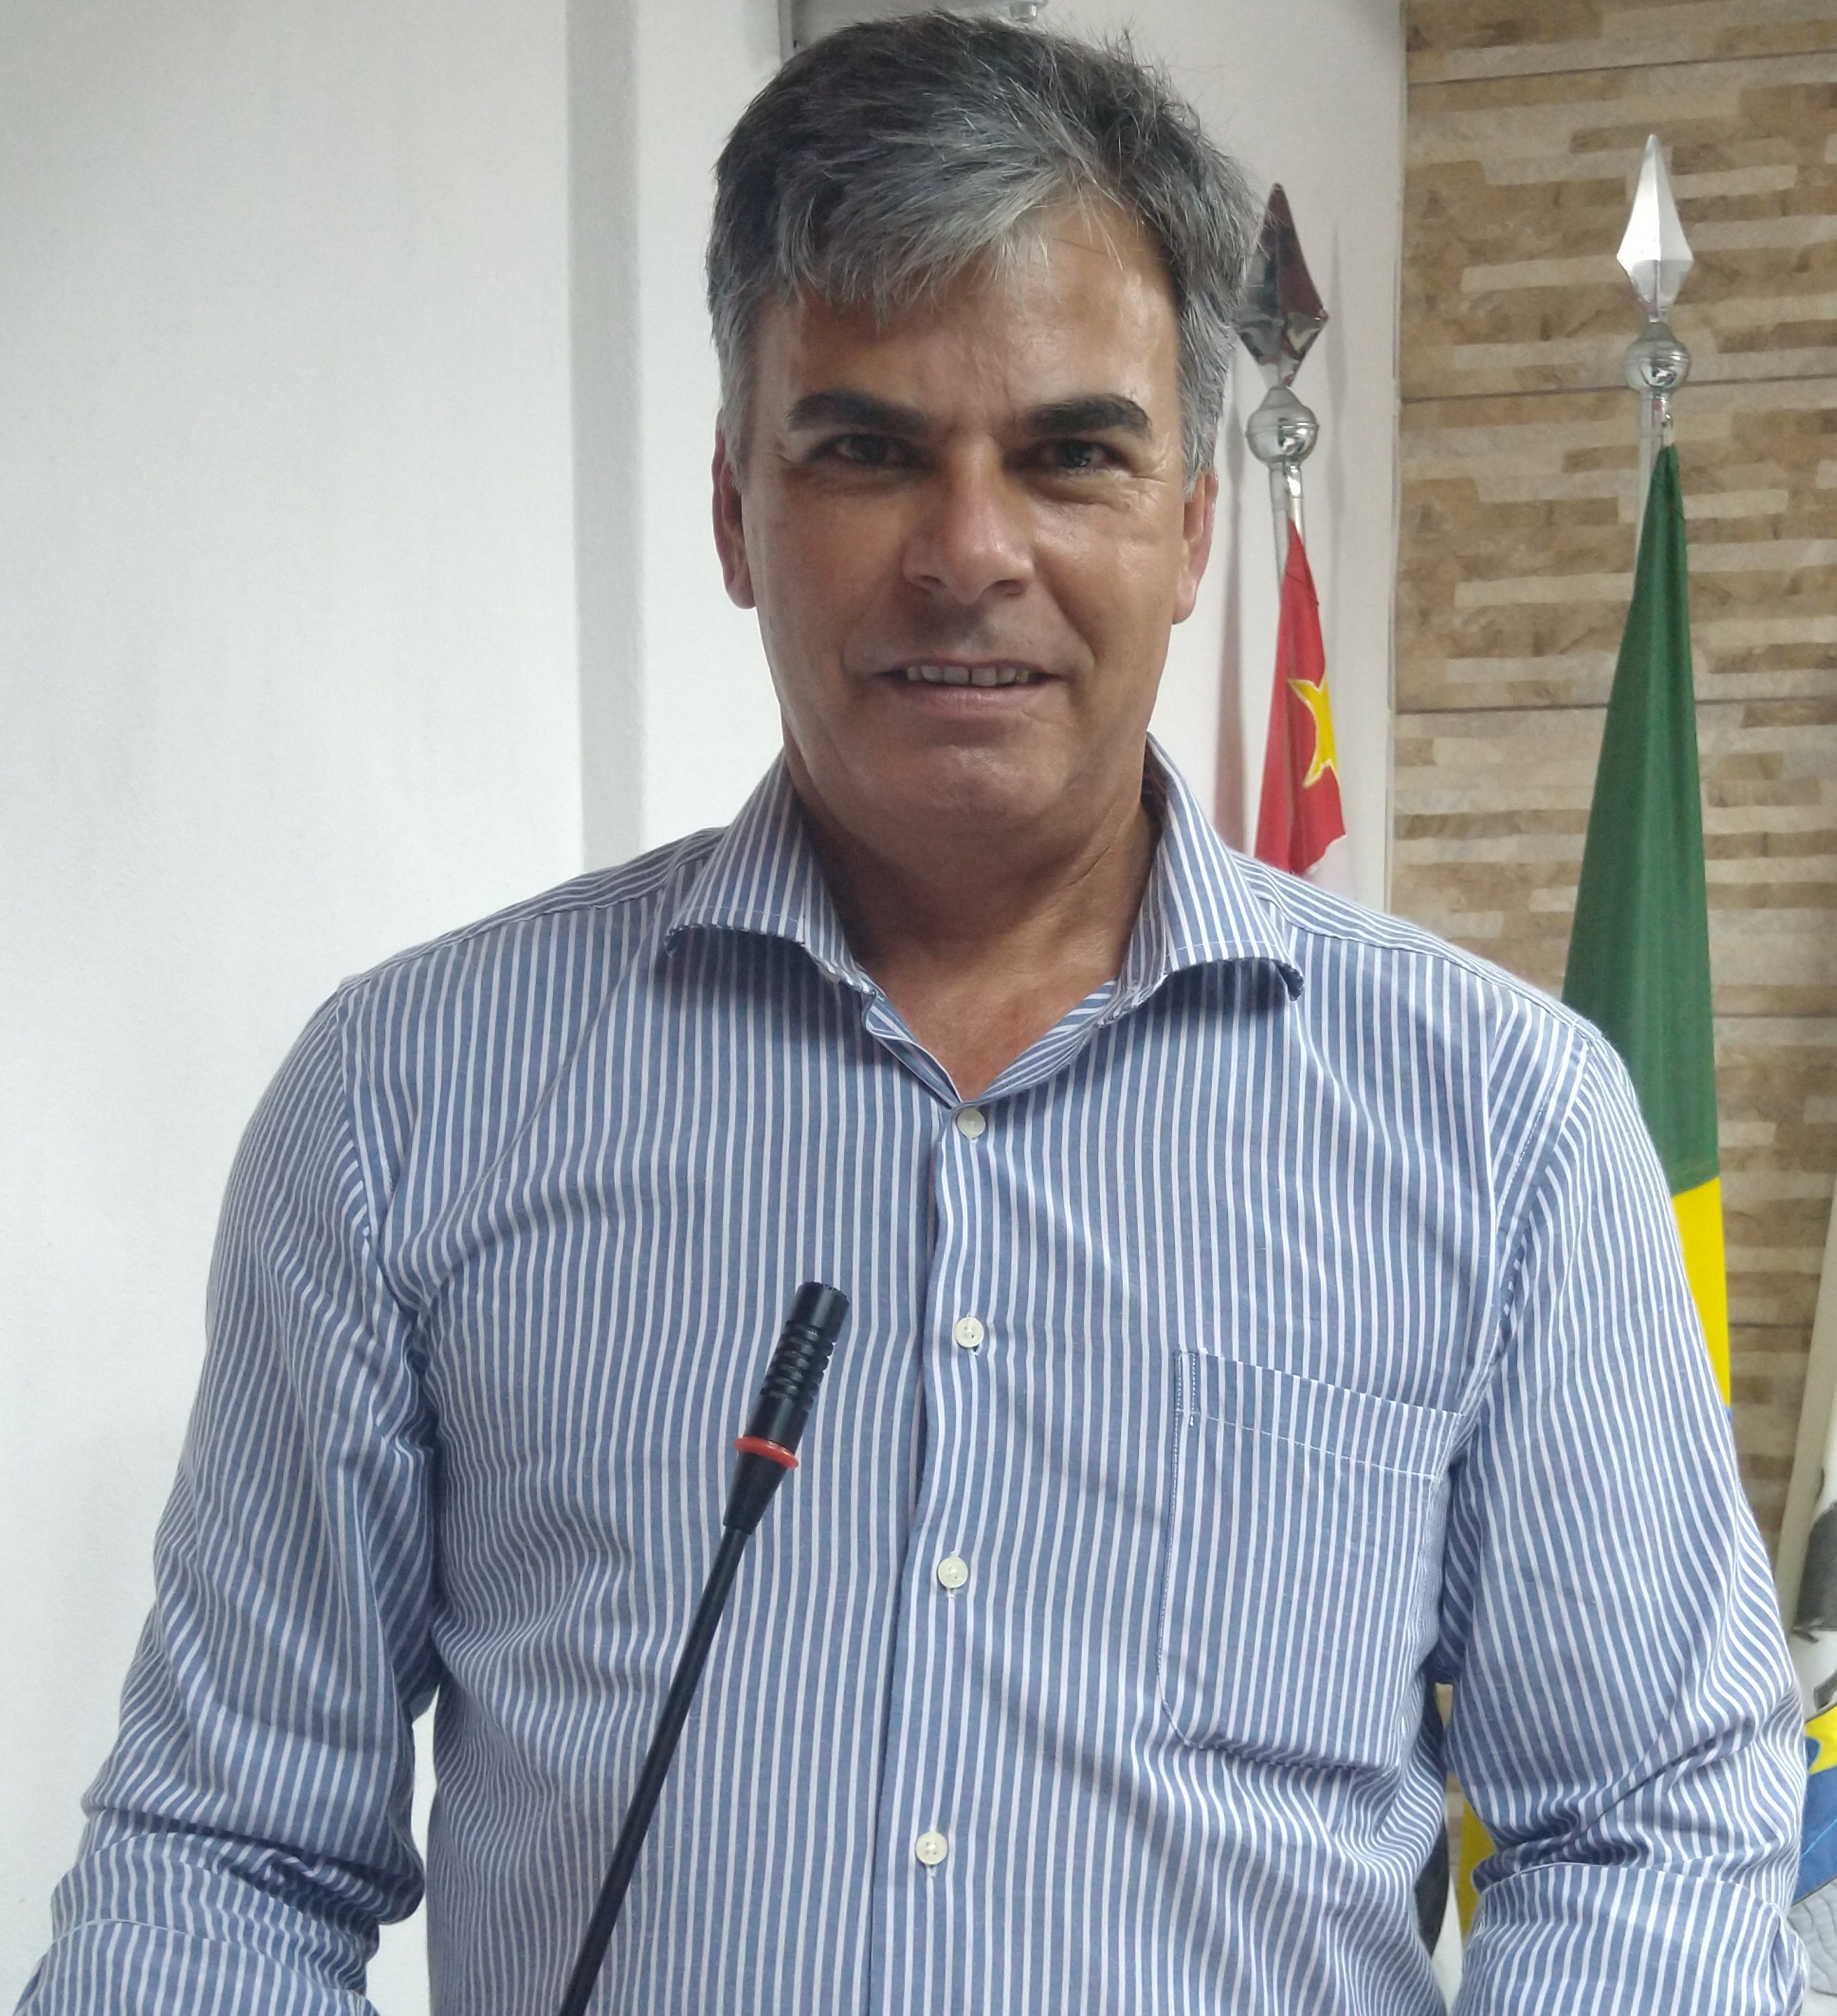 Antenor José Teixeira